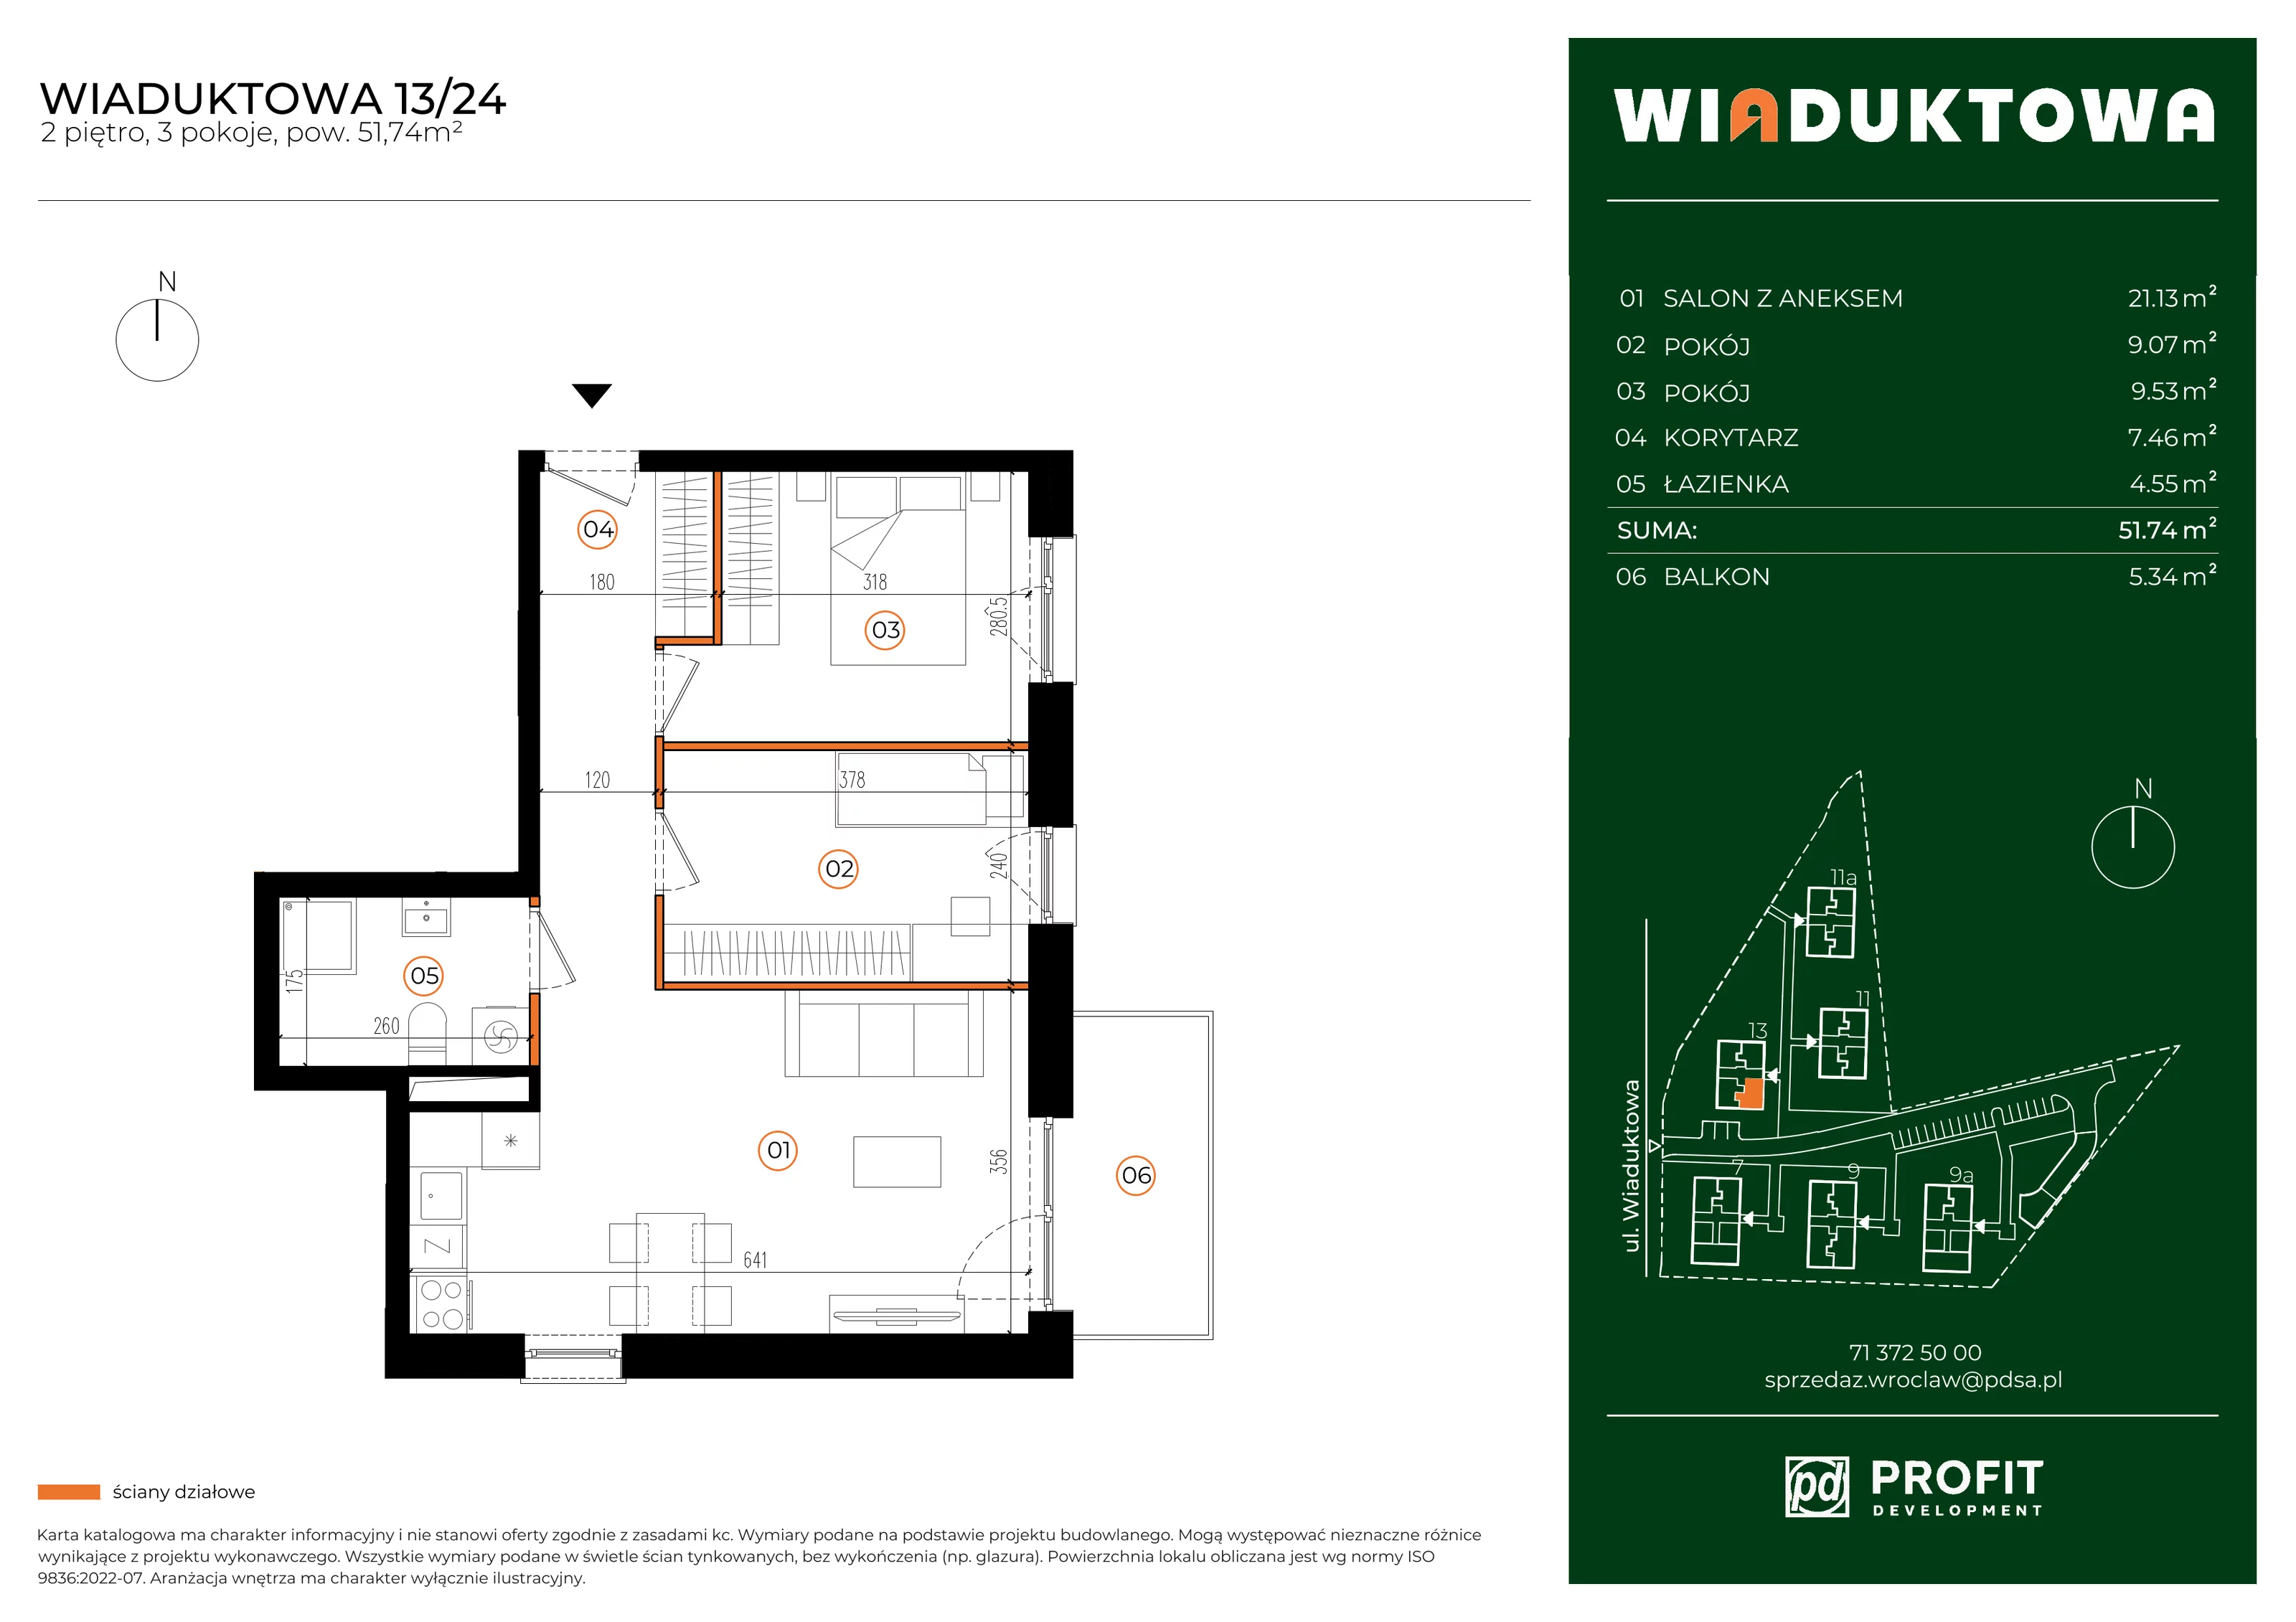 Mieszkanie 51,74 m², piętro 2, oferta nr WI/13/24, Wiaduktowa, Wrocław, Krzyki-Partynice, Krzyki, ul. Wiaduktowa